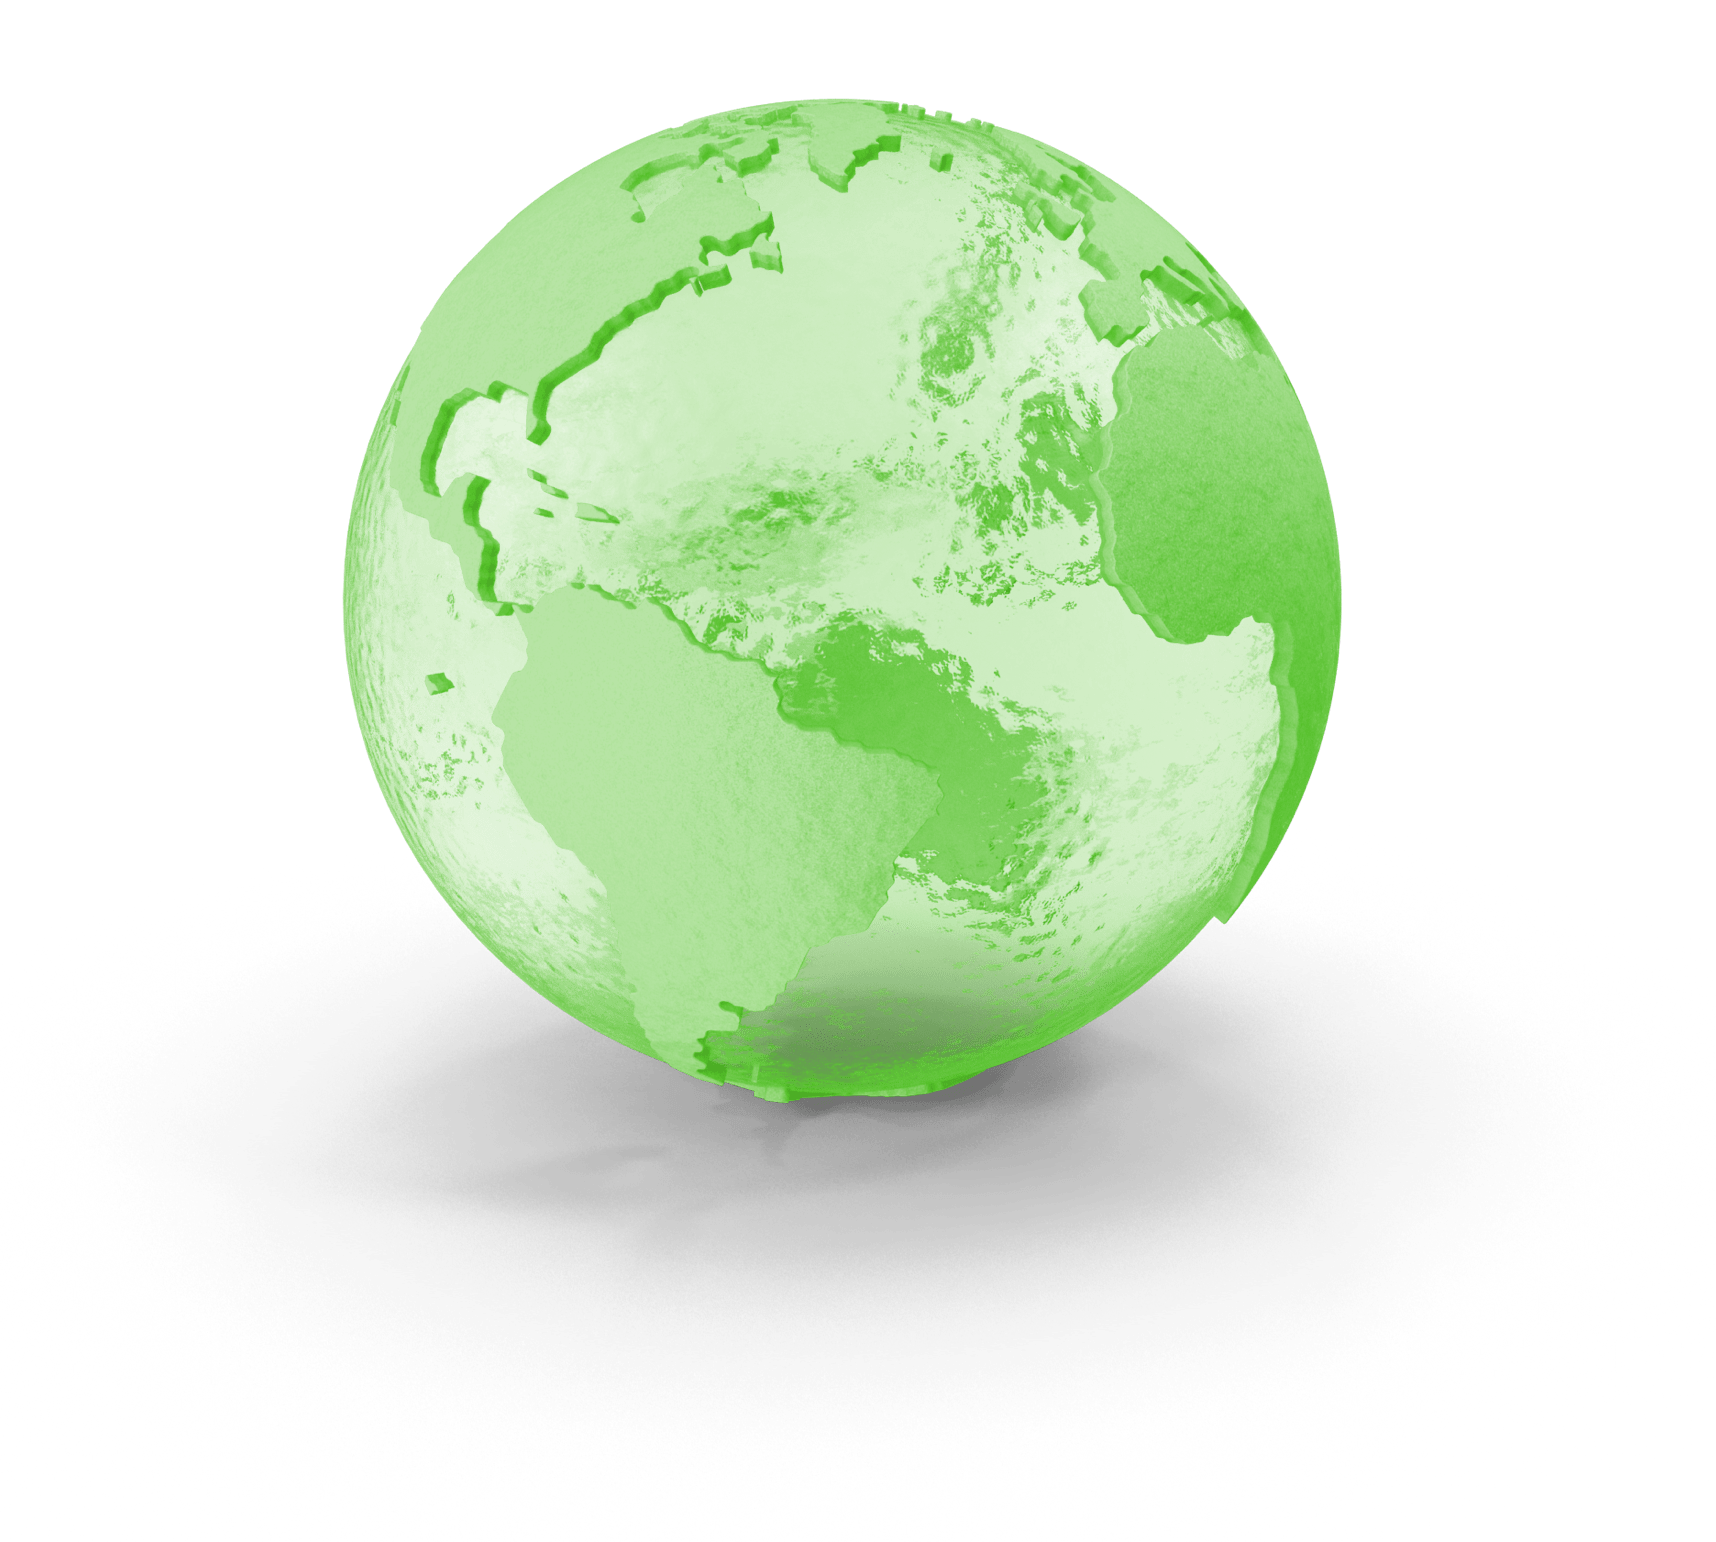 Ziele European Green Deal